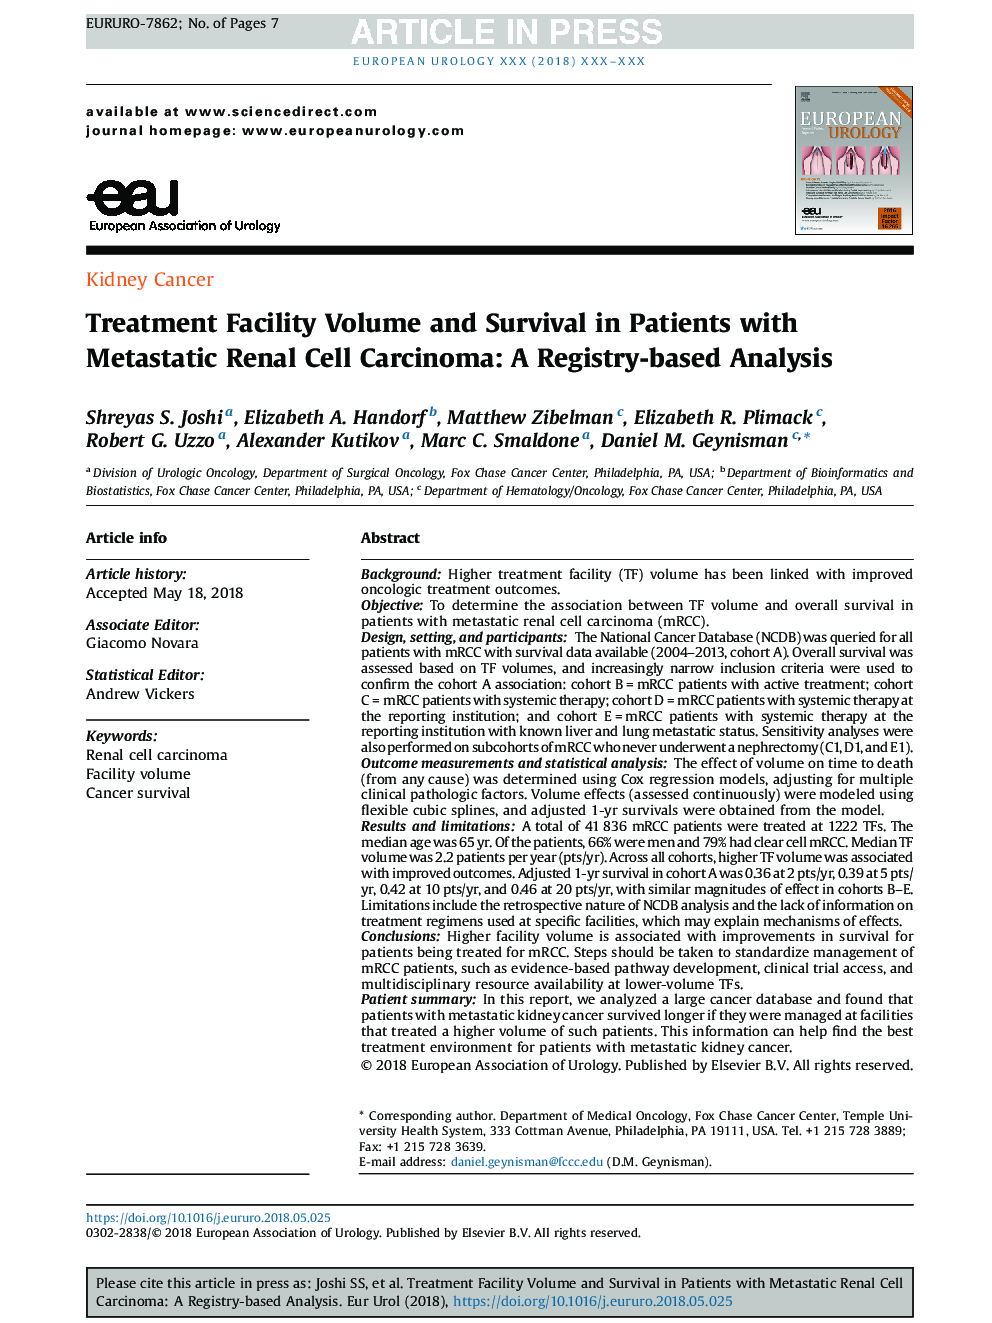 دوره درمان و میزان بقا در بیماران مبتلا به کارسینوم سلول های کلیه متاستاتیک: یک تجزیه و تحلیل مبتنی بر رجیستری 